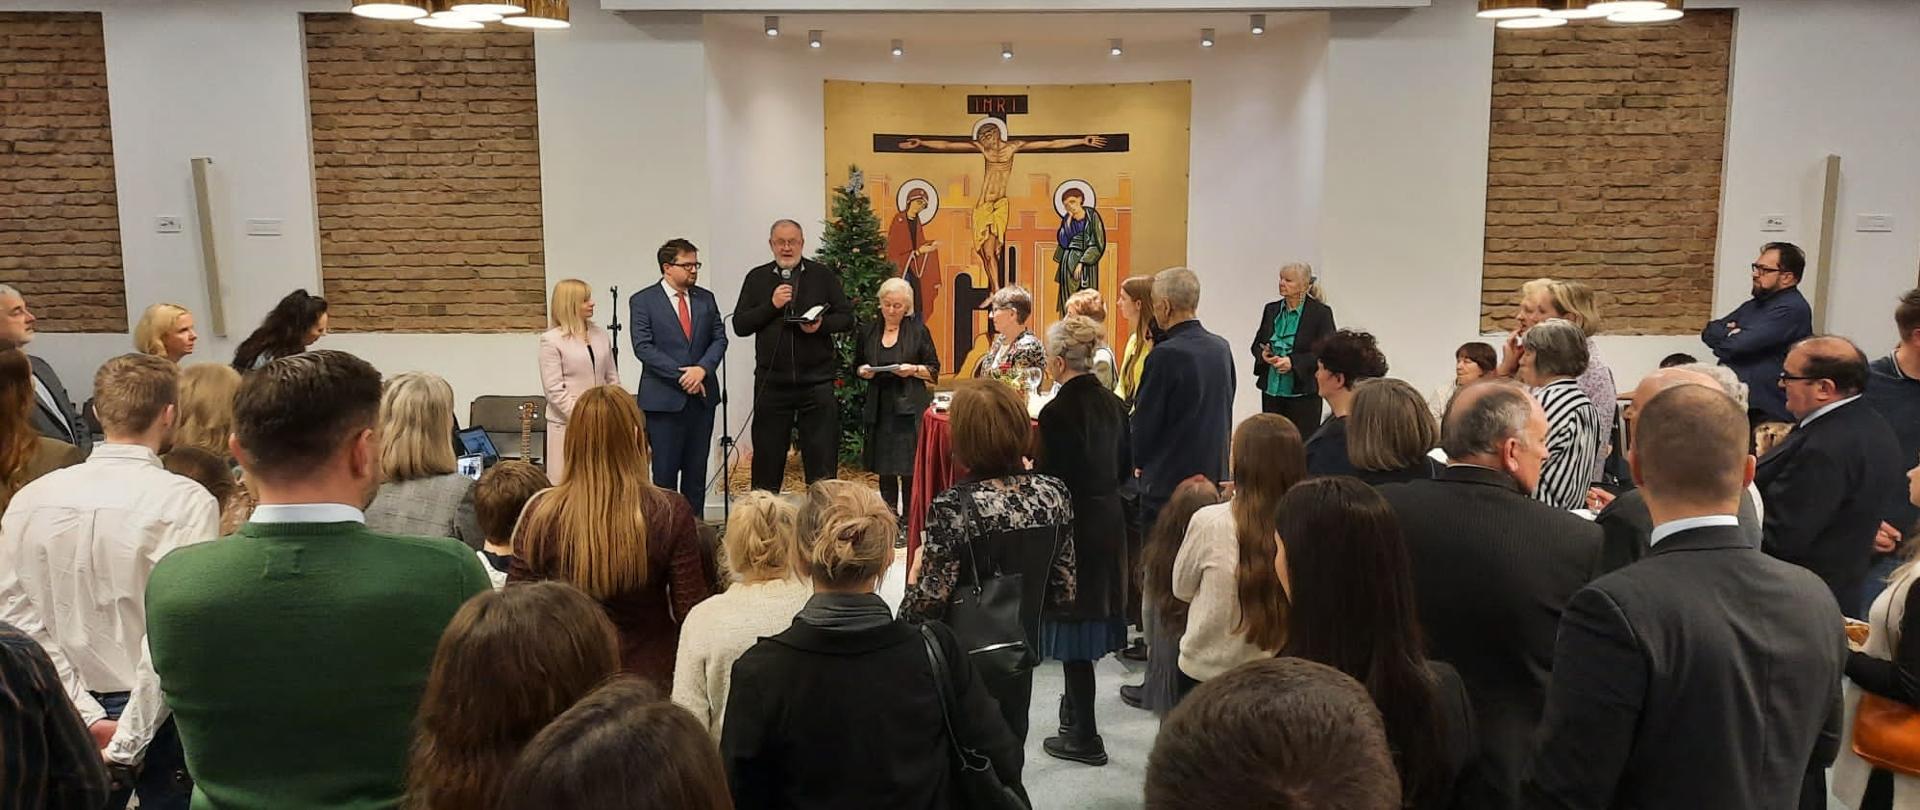 Oko 120 predstavnika poljskih zajednica i Poljaka koji žive u Srbiji prisustvovalo je tradicionalnom božićnom susretu koji je organizovala Ambasada Republike Poljske u Beogradu.